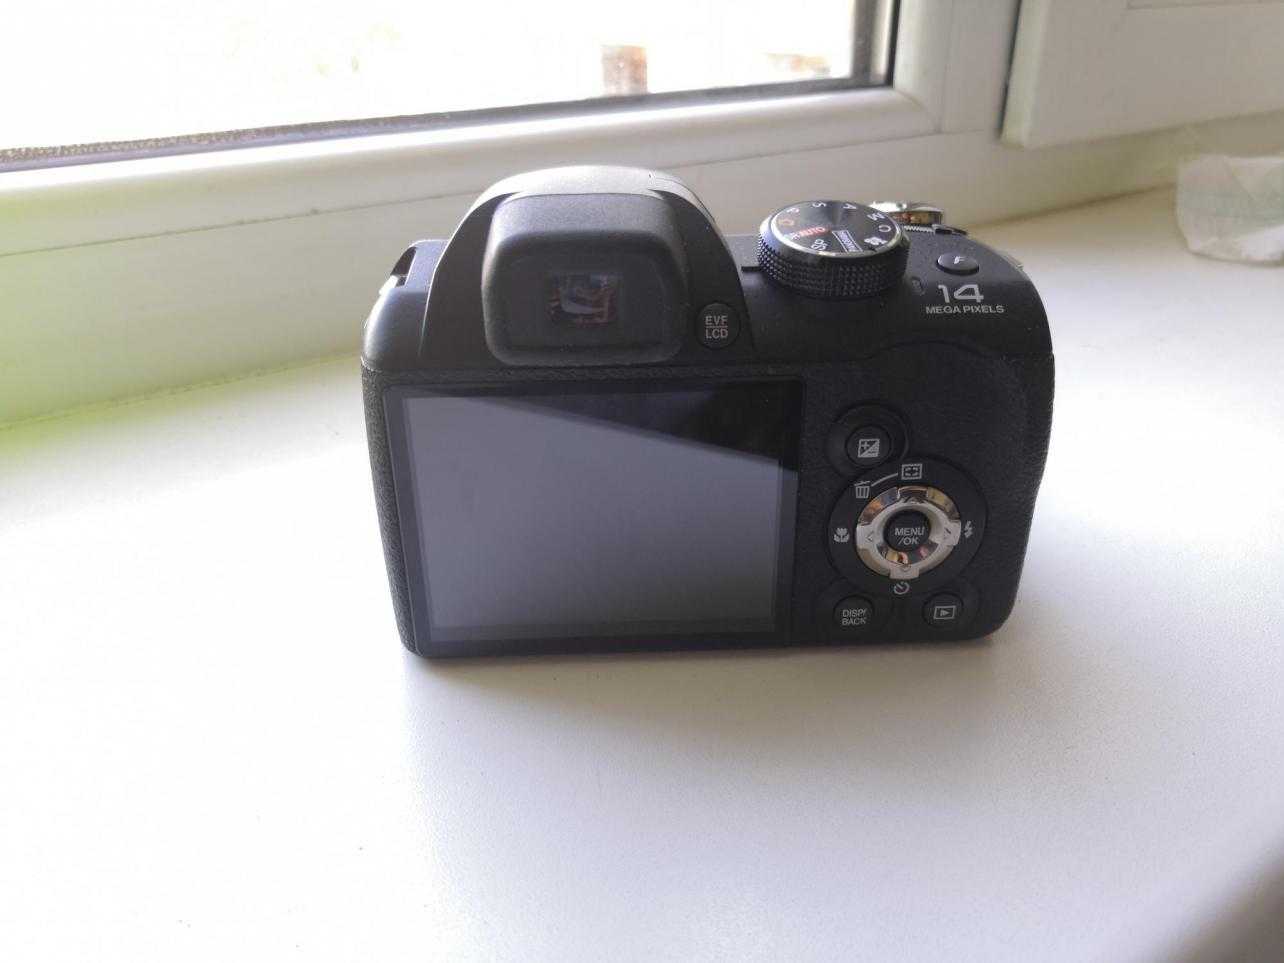 Компактный фотоаппарат fujifilm finepix s2800hd - купить | цены | обзоры и тесты | отзывы | параметры и характеристики | инструкция